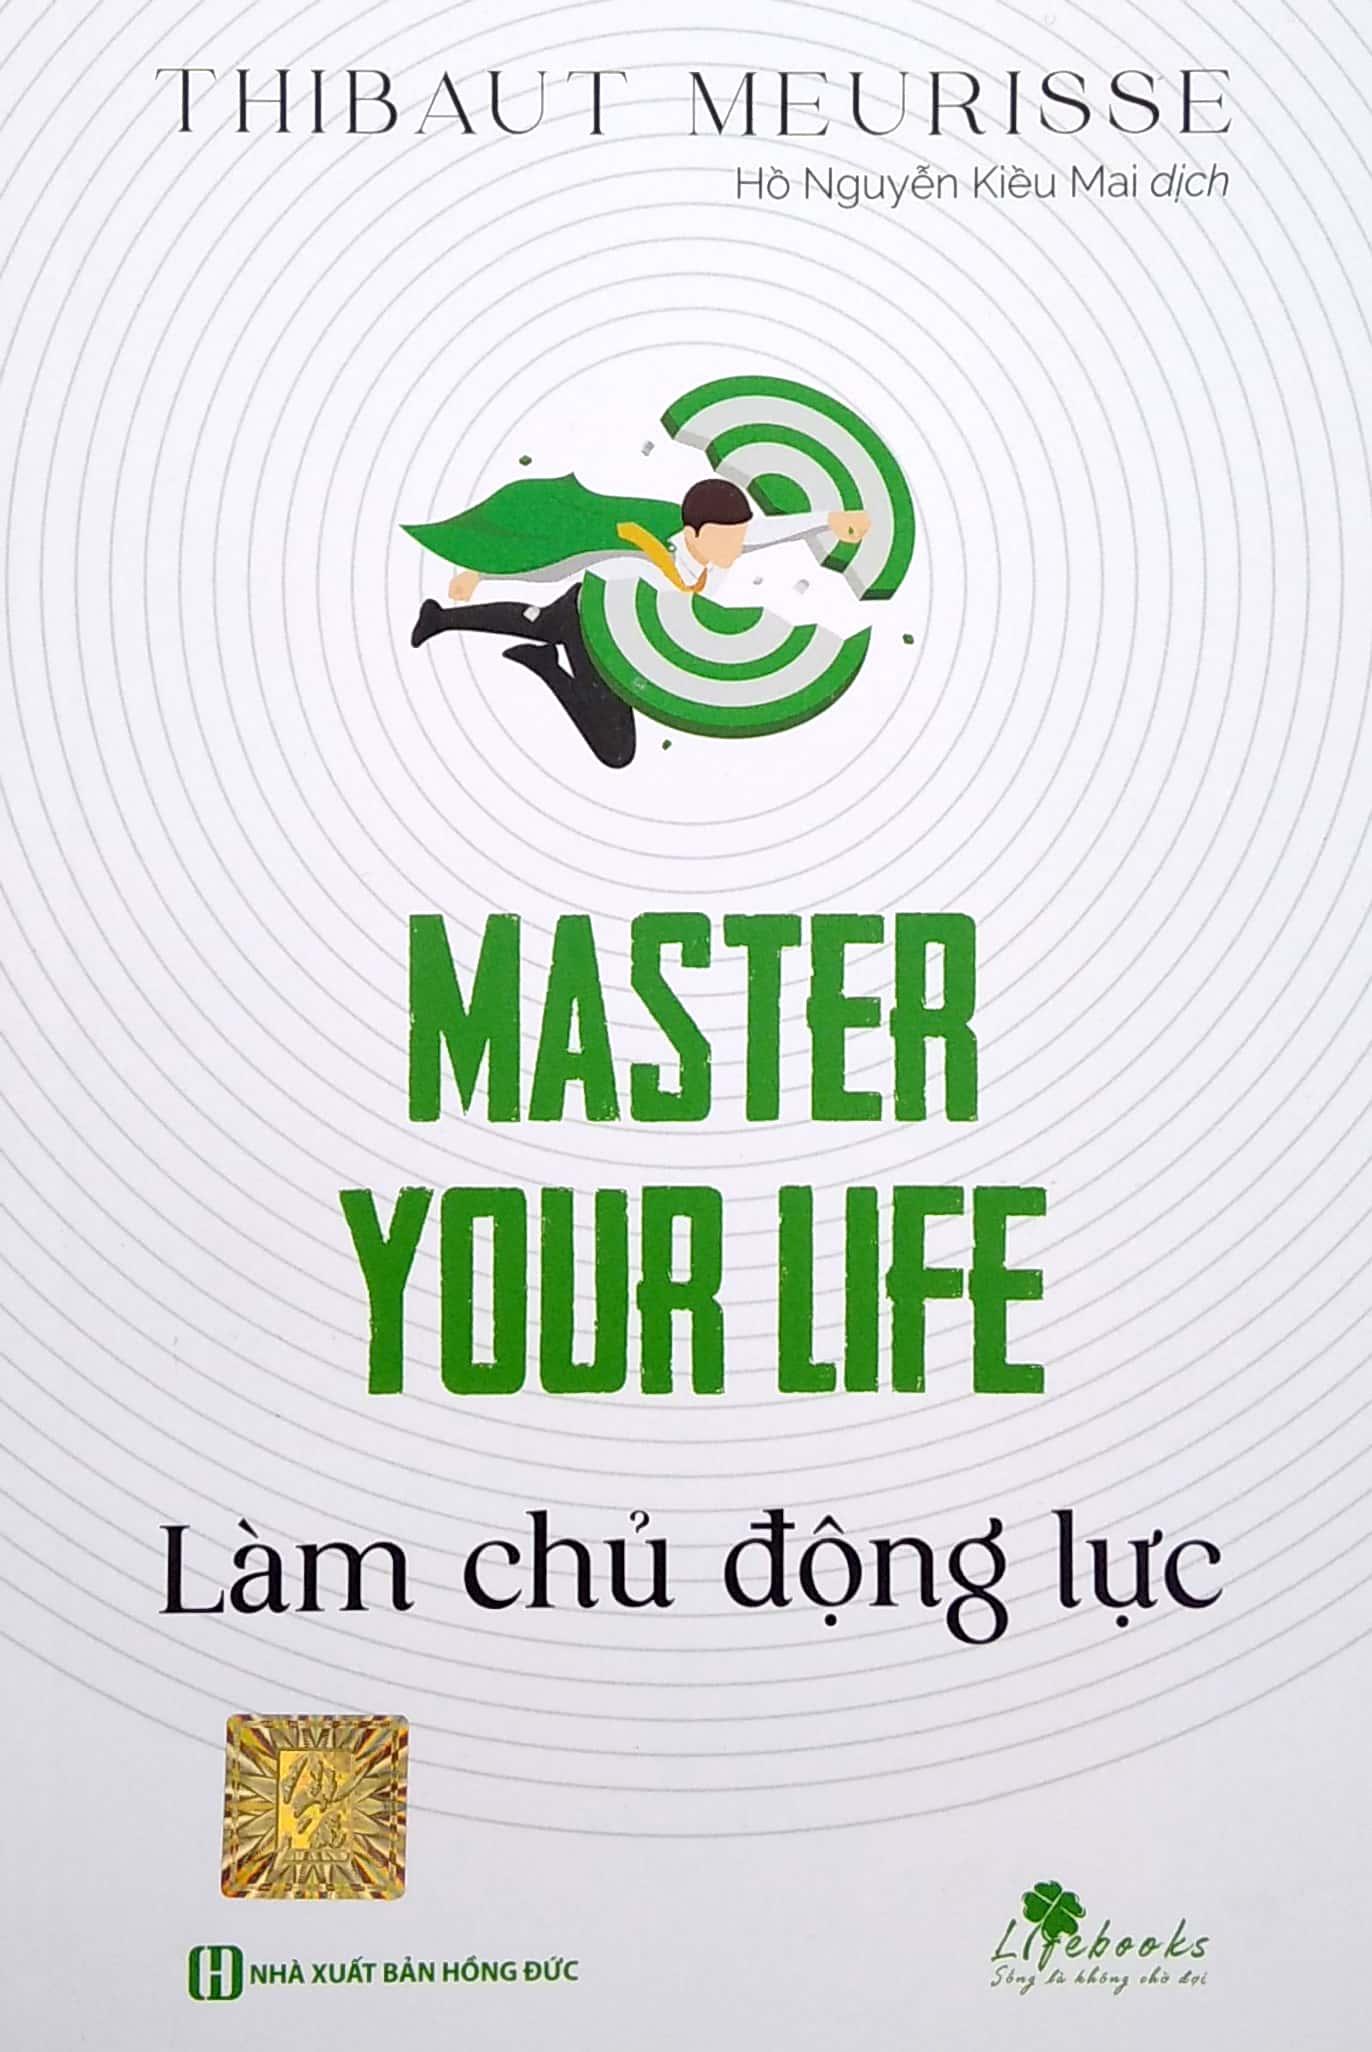 Master Your Life - Làm Chủ Động Lực